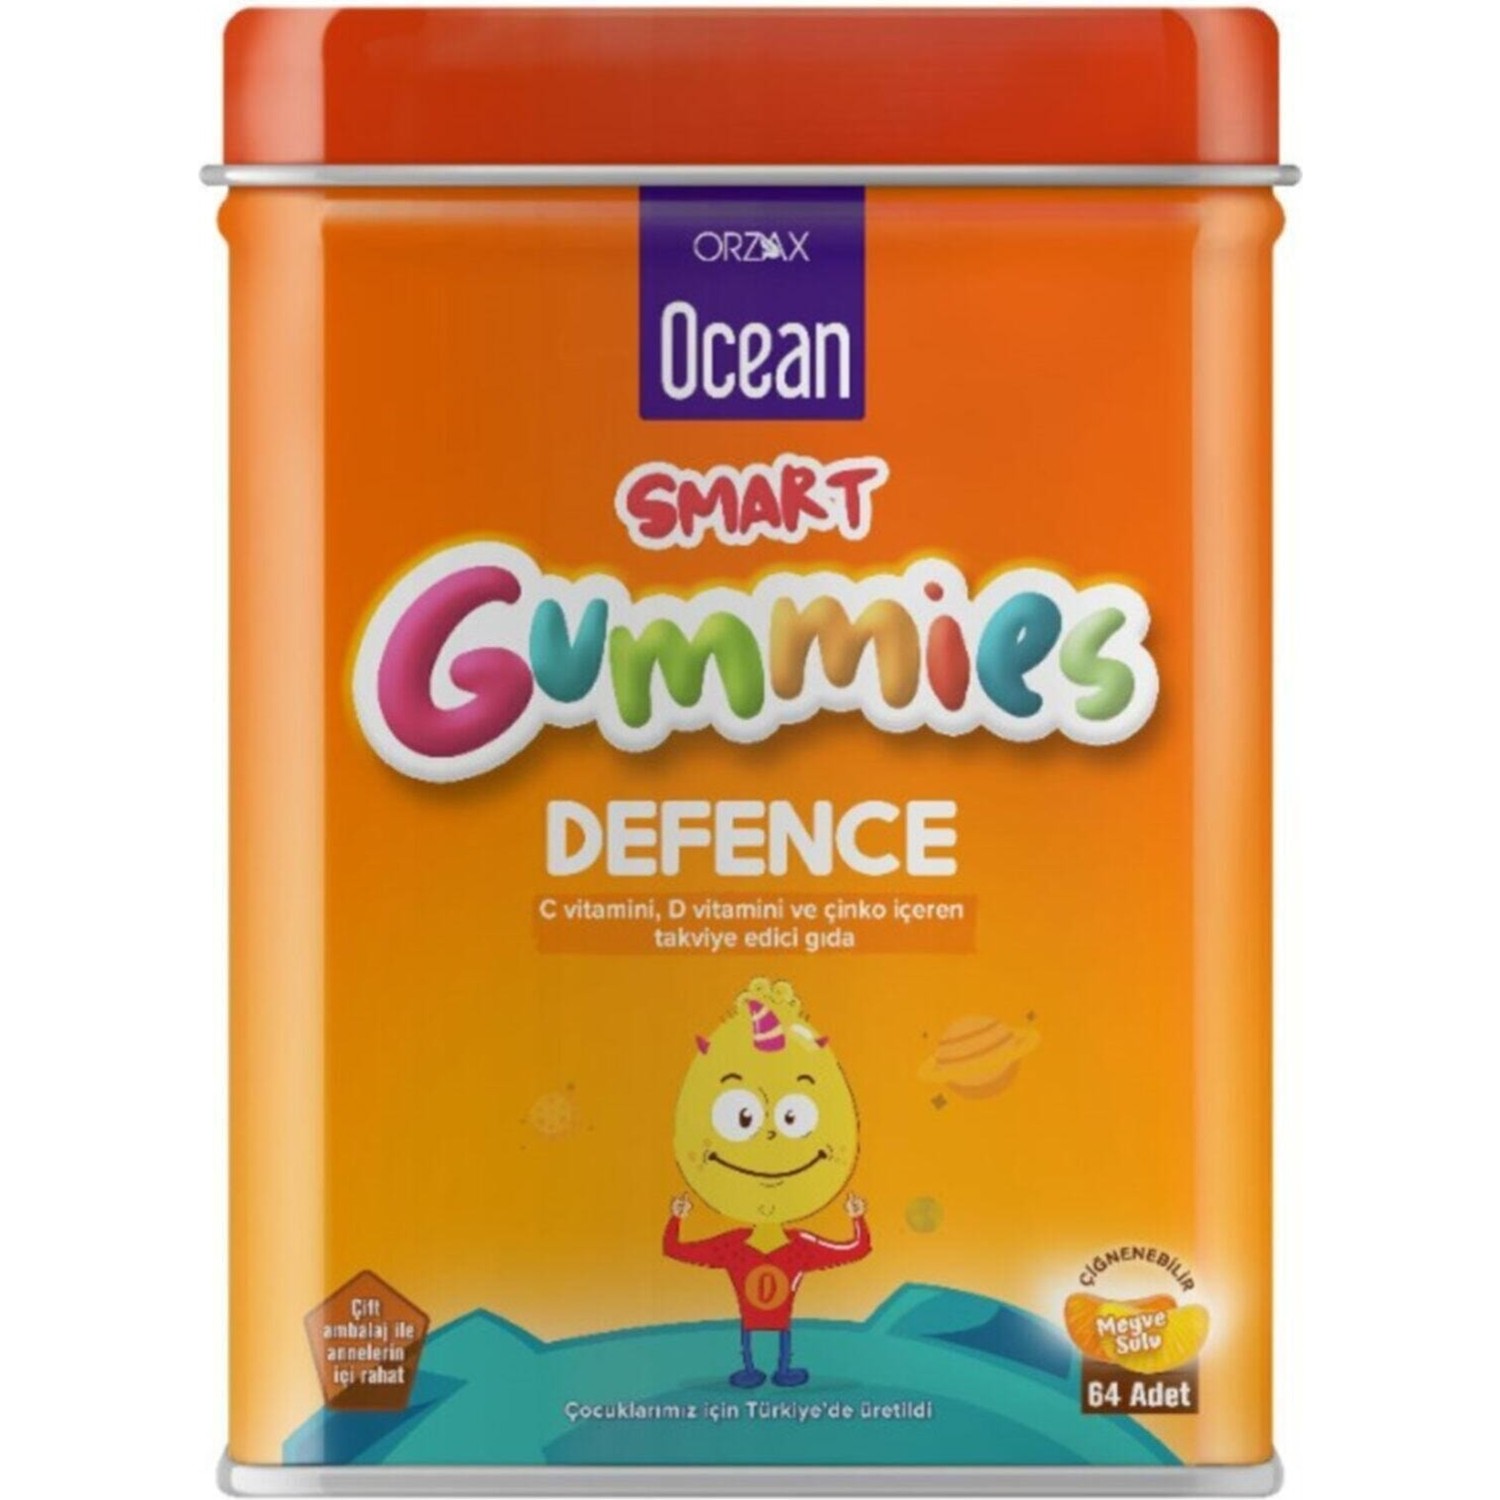 Пищевая добавка Ocean Smart Gummies Defense Cigneme, 64 таблетки активная добавка daily one energy мультивитаминная жевательная резинка ocean smart gummies в форме 64 граммового геля